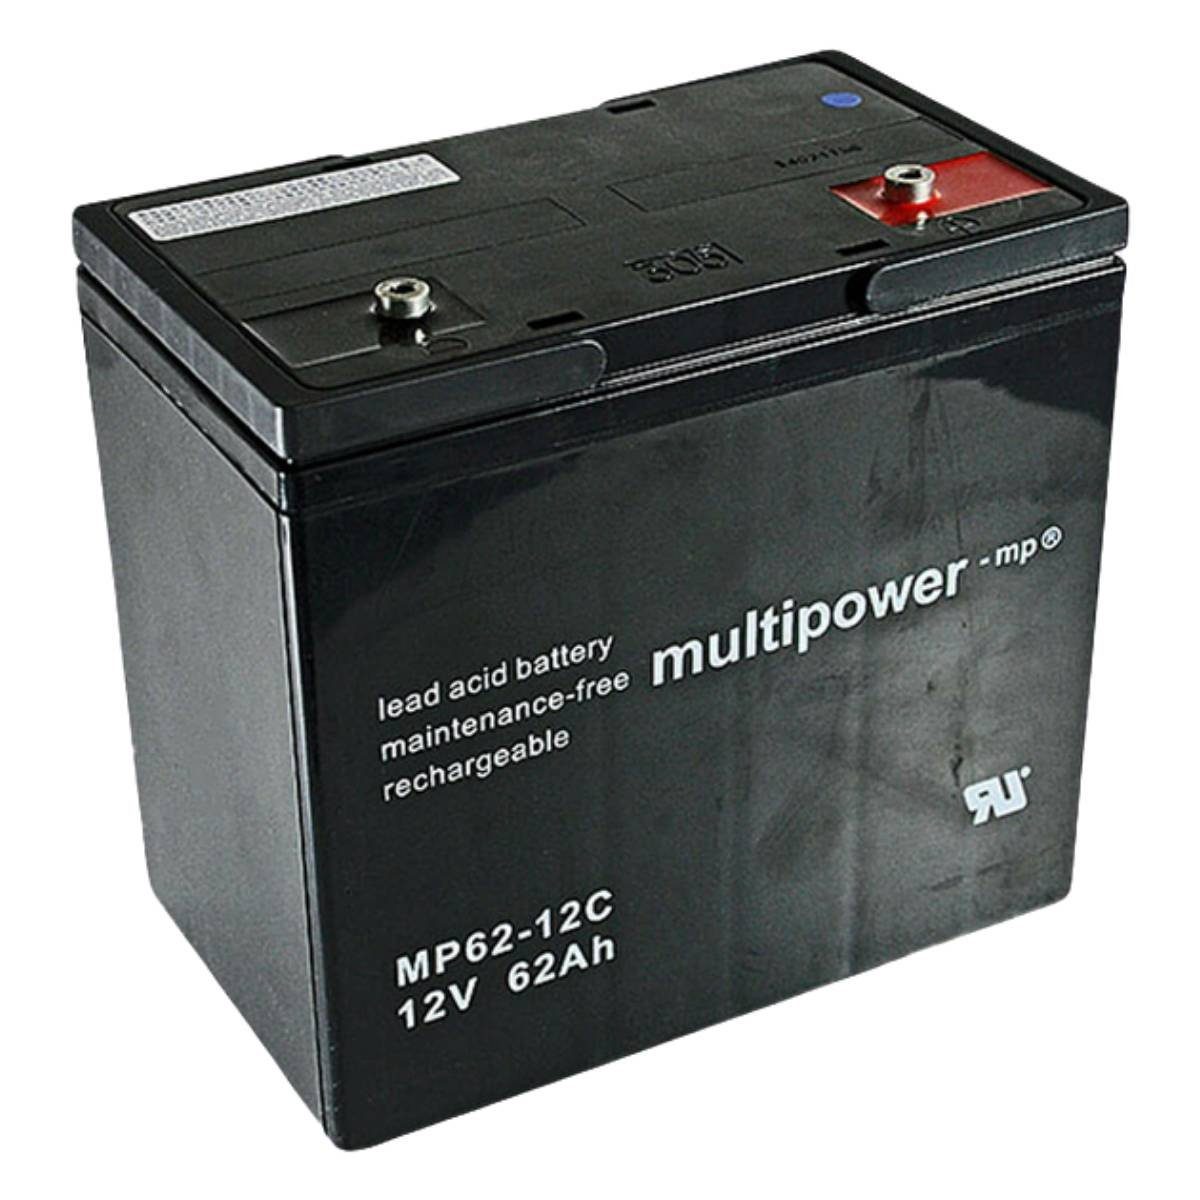 Multipower MP62-12C AGM Batterie 12V 62Ah für Rollstuhl, Elektromobil und Scooter Batterie, (12 V)